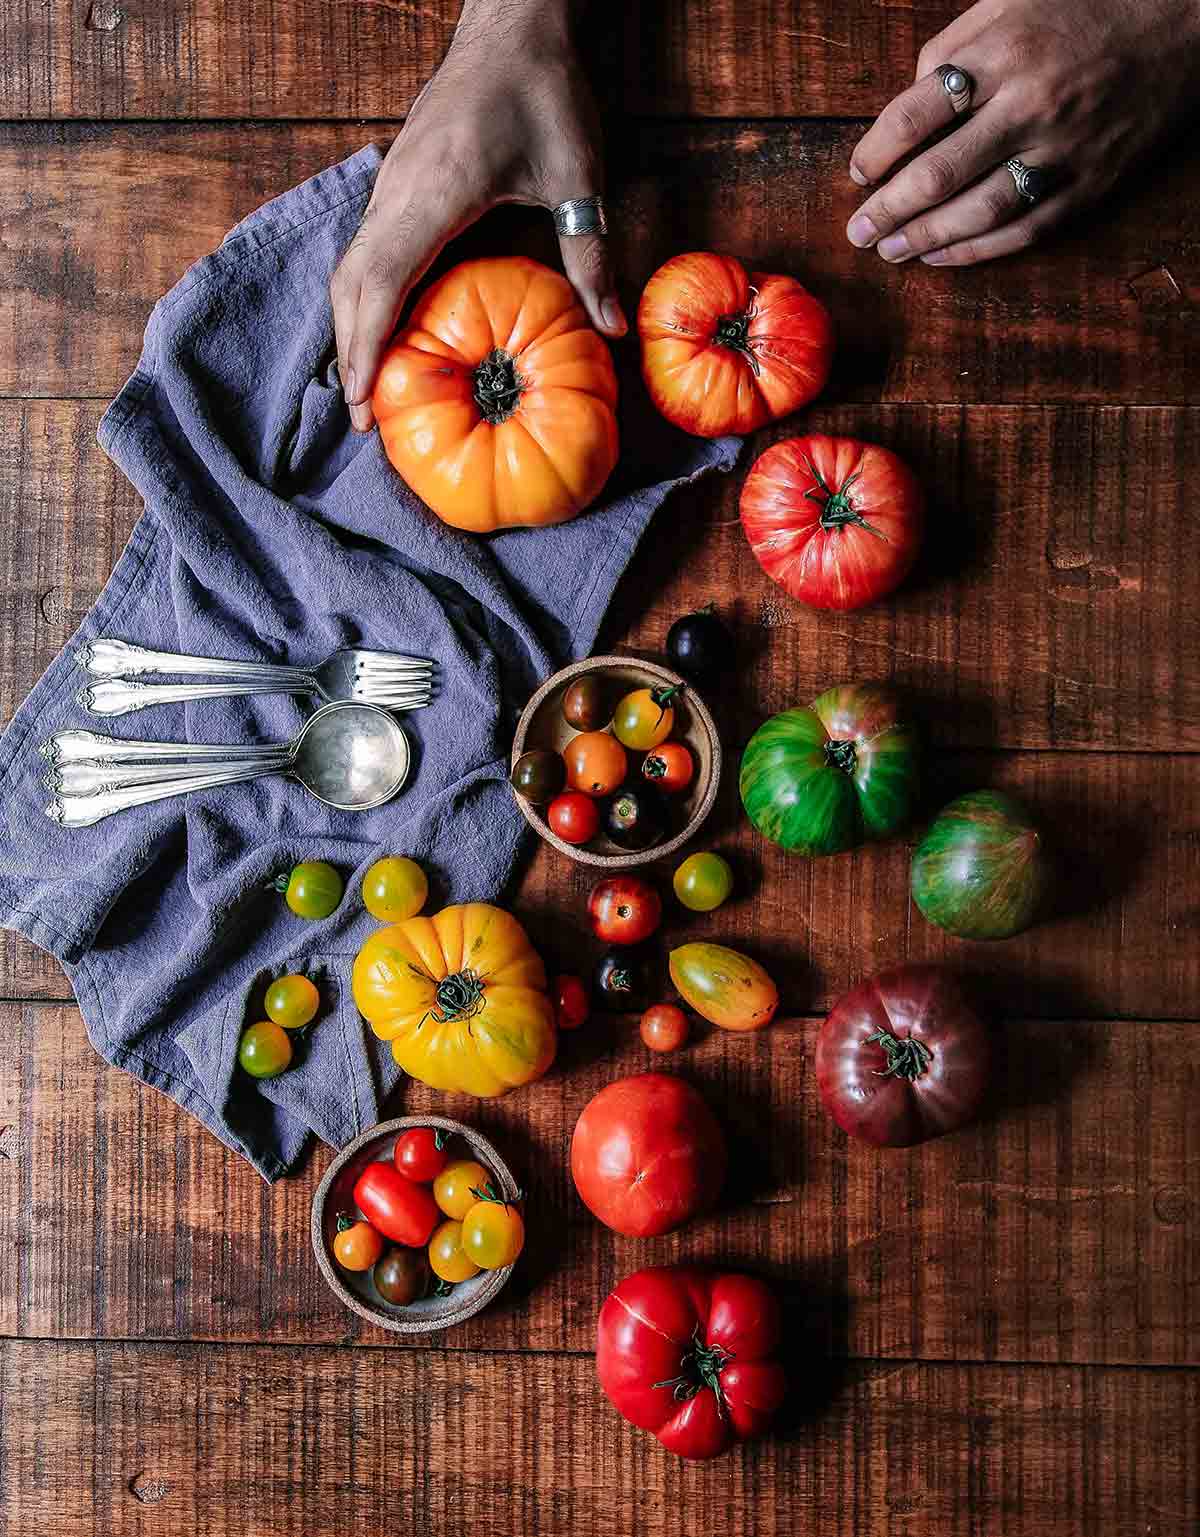 Sebuah meja kayu penuh dengan berbagai macam tomat, serbet kain, sendok dan garpu dan seseorang dengan lembut meremas tomat untuk memeriksa apakah tomat sudah matang sempurna.